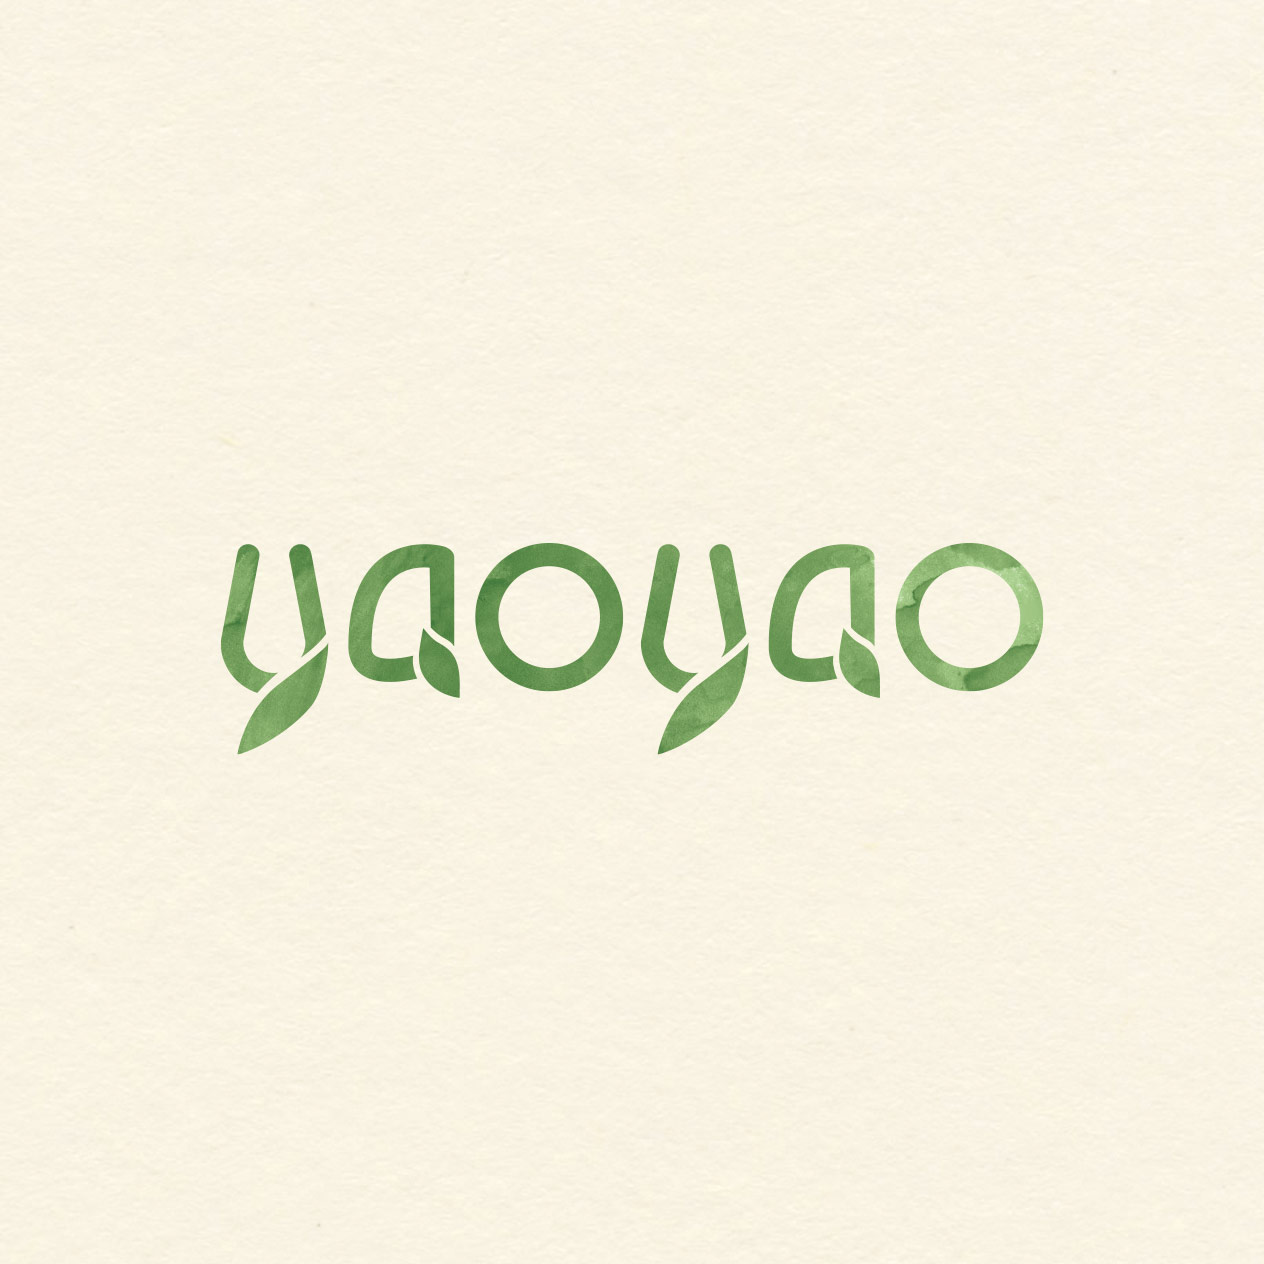 yaoyao logo wasserfarbe